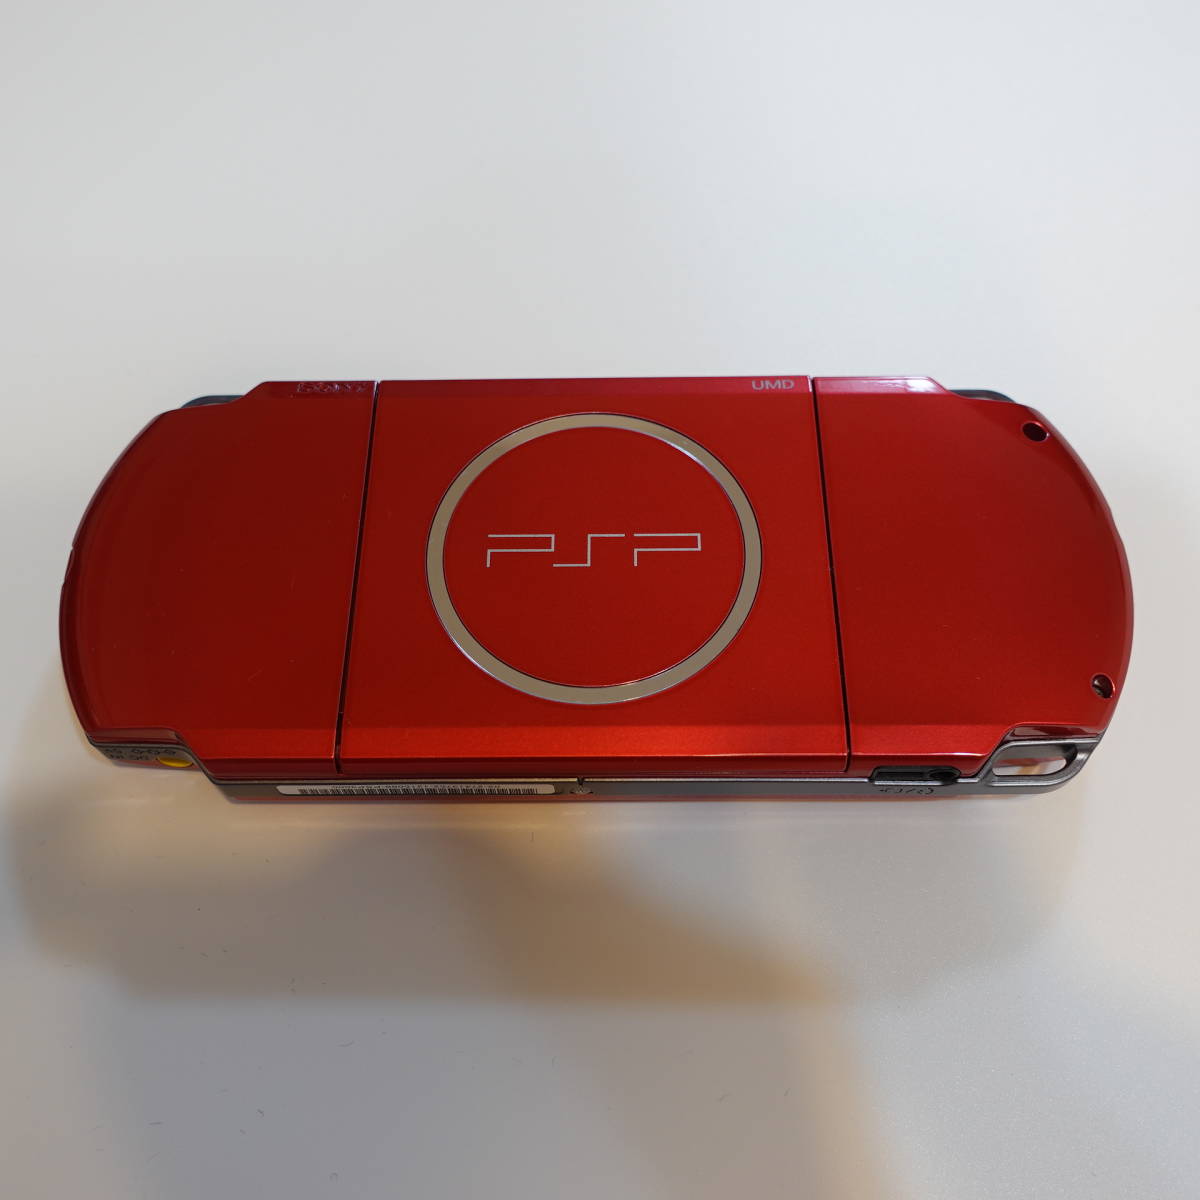 PSP 3000 バッテリーなし バッテリーカバーつめ破損 レッド 赤 モンハン アイルーメモリースティックつき